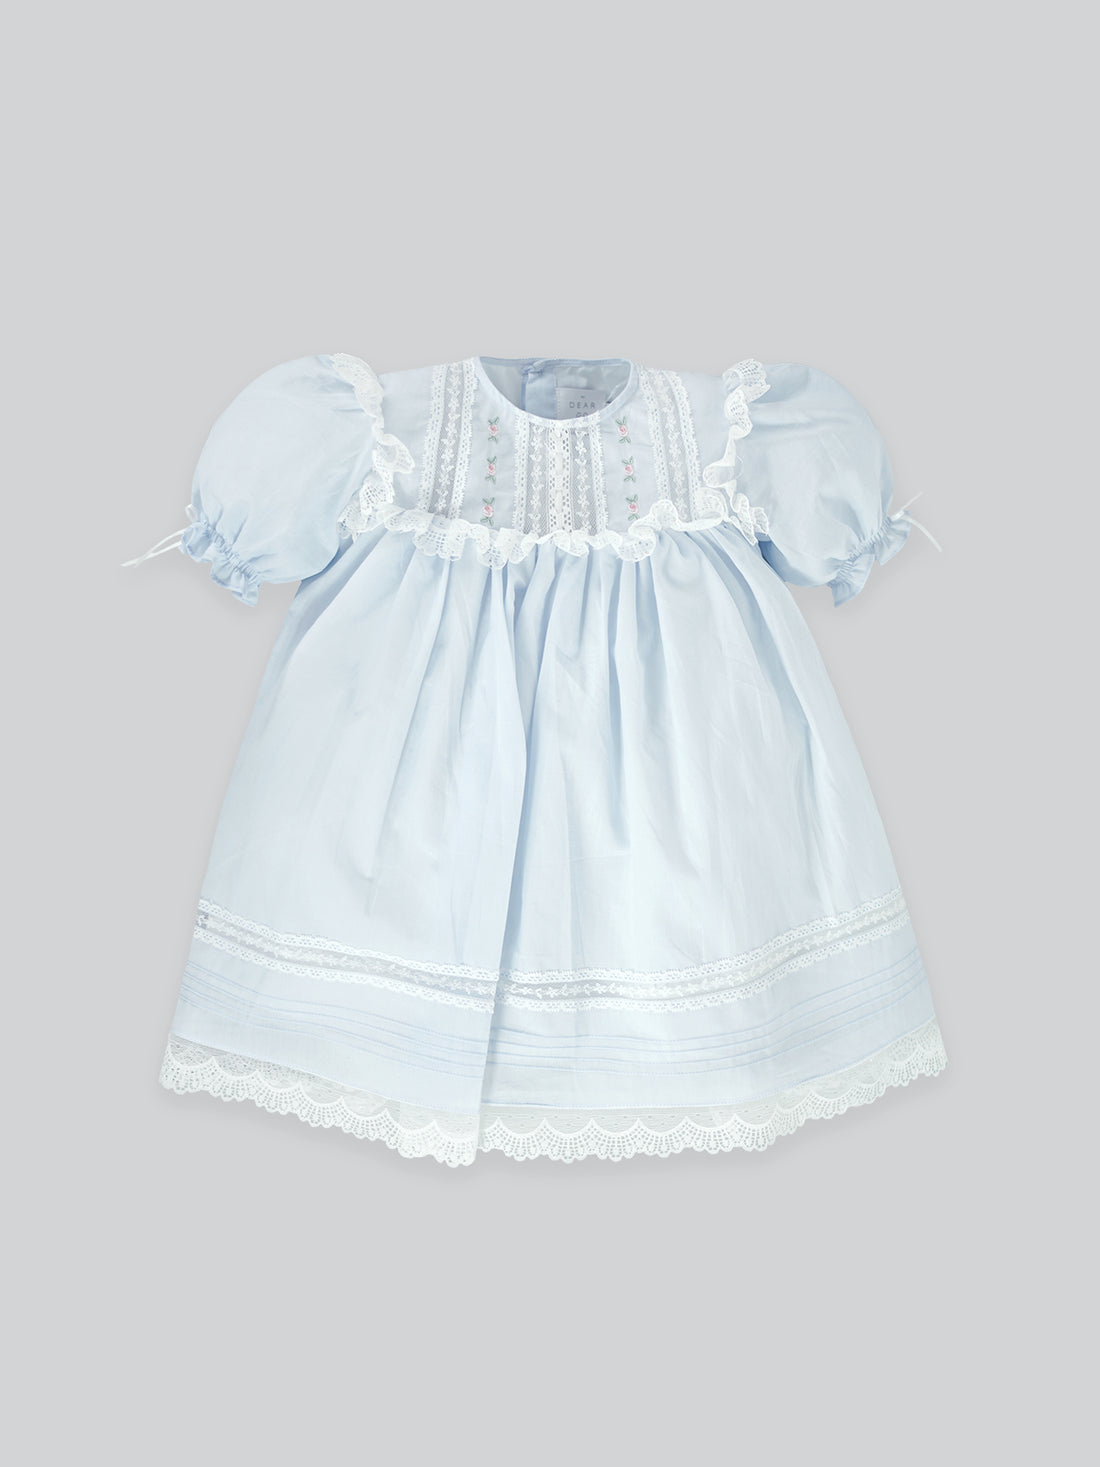 Korra Dress in Baby Blue